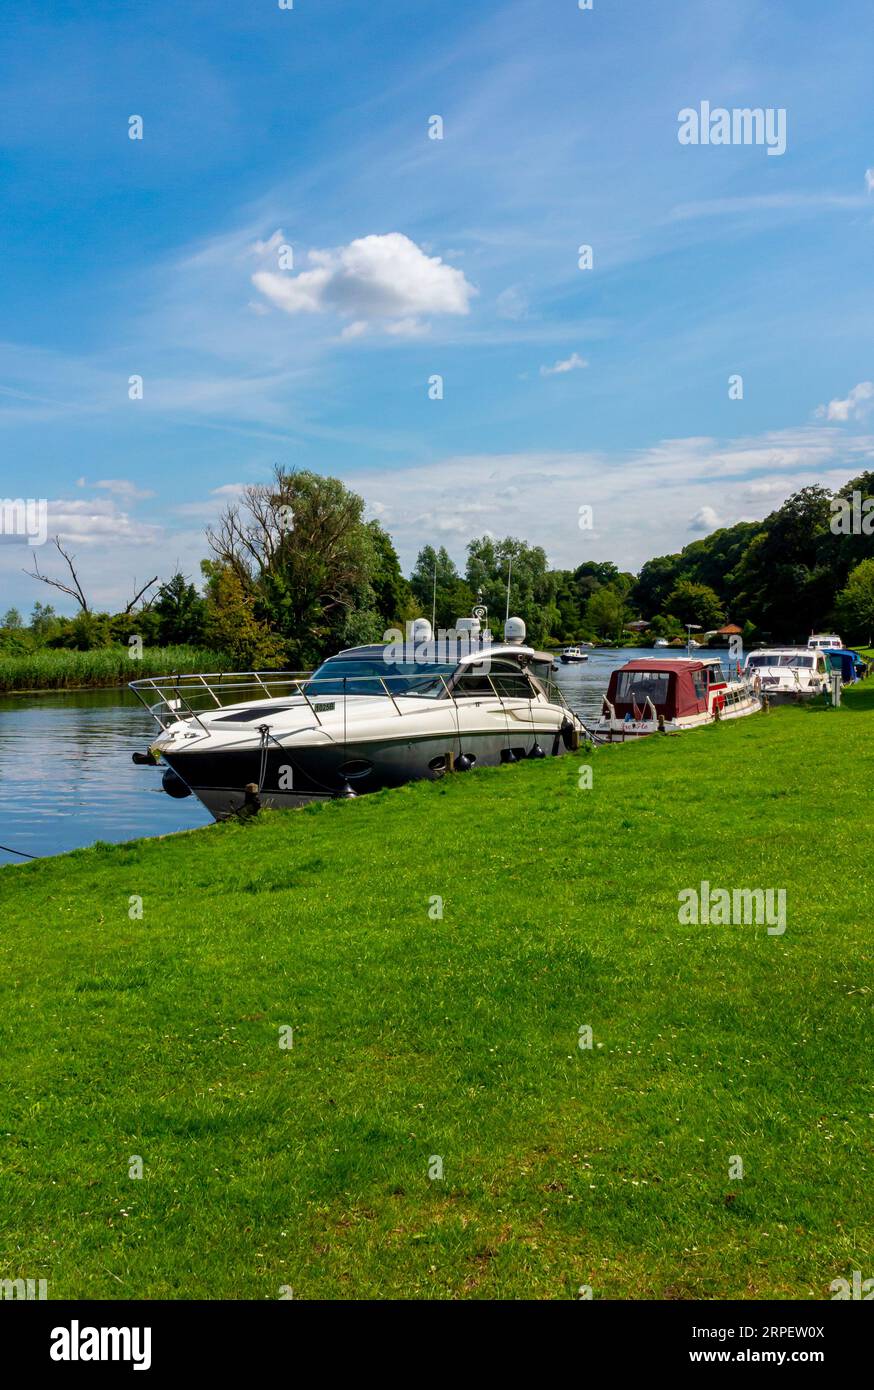 Bateaux de plaisance amarrés sur la rivière Yare à Bramerton Common dans les Norfolk Broads Angleterre Royaume-Uni. Banque D'Images